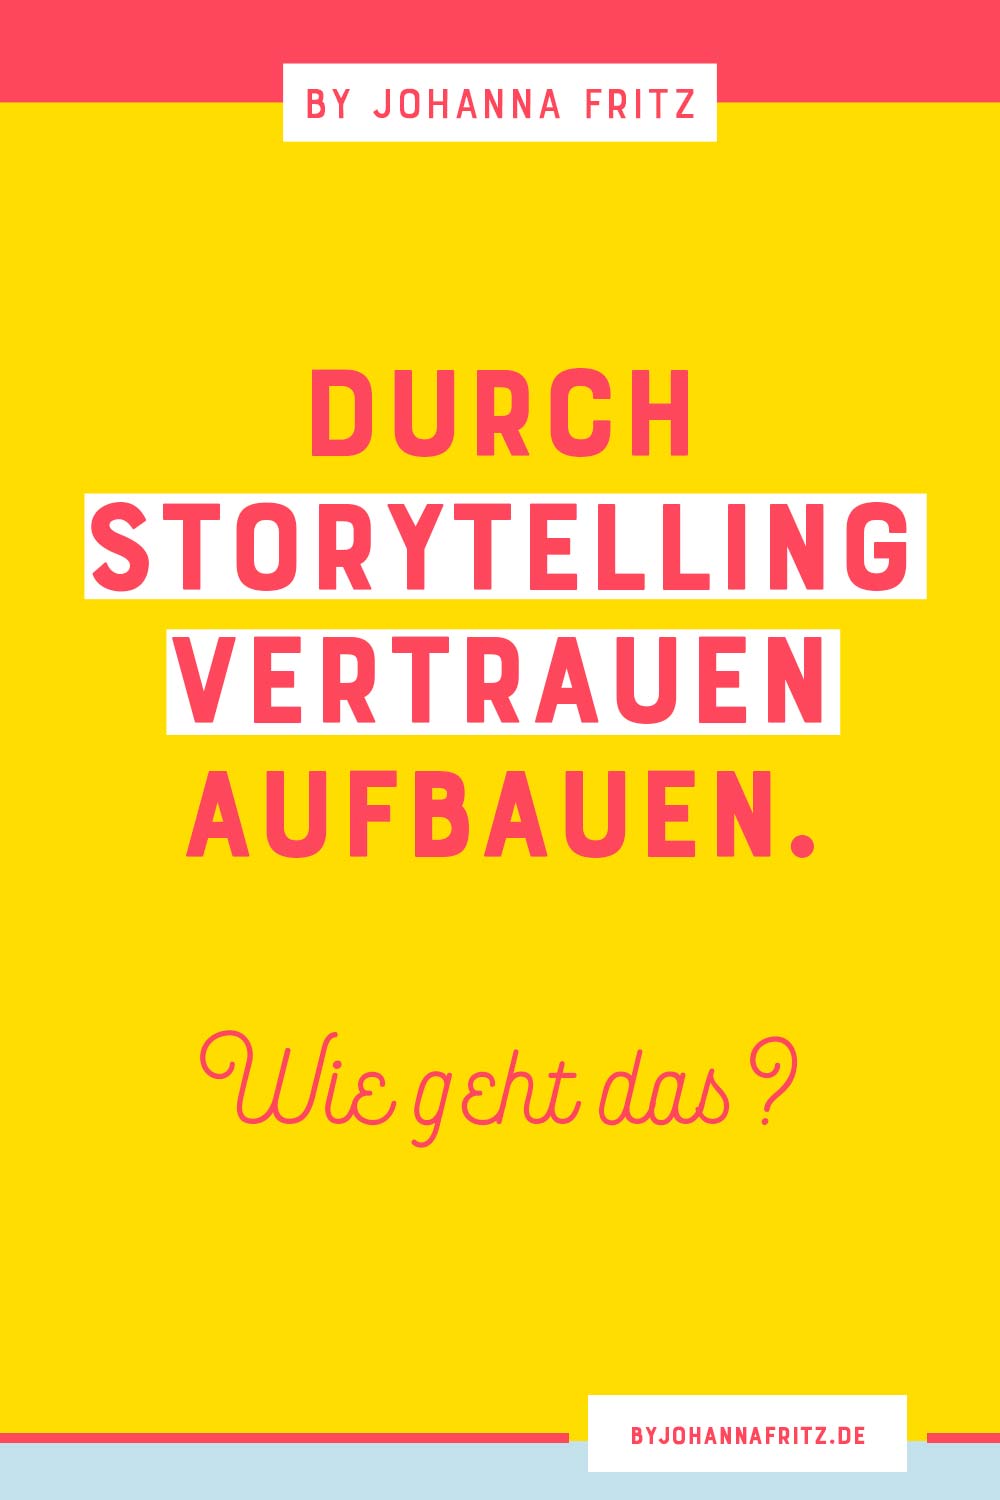 Storytelling für dein Business - so baust du mit deiner Geschichte Vertrauen auf - By Johanna Fritz